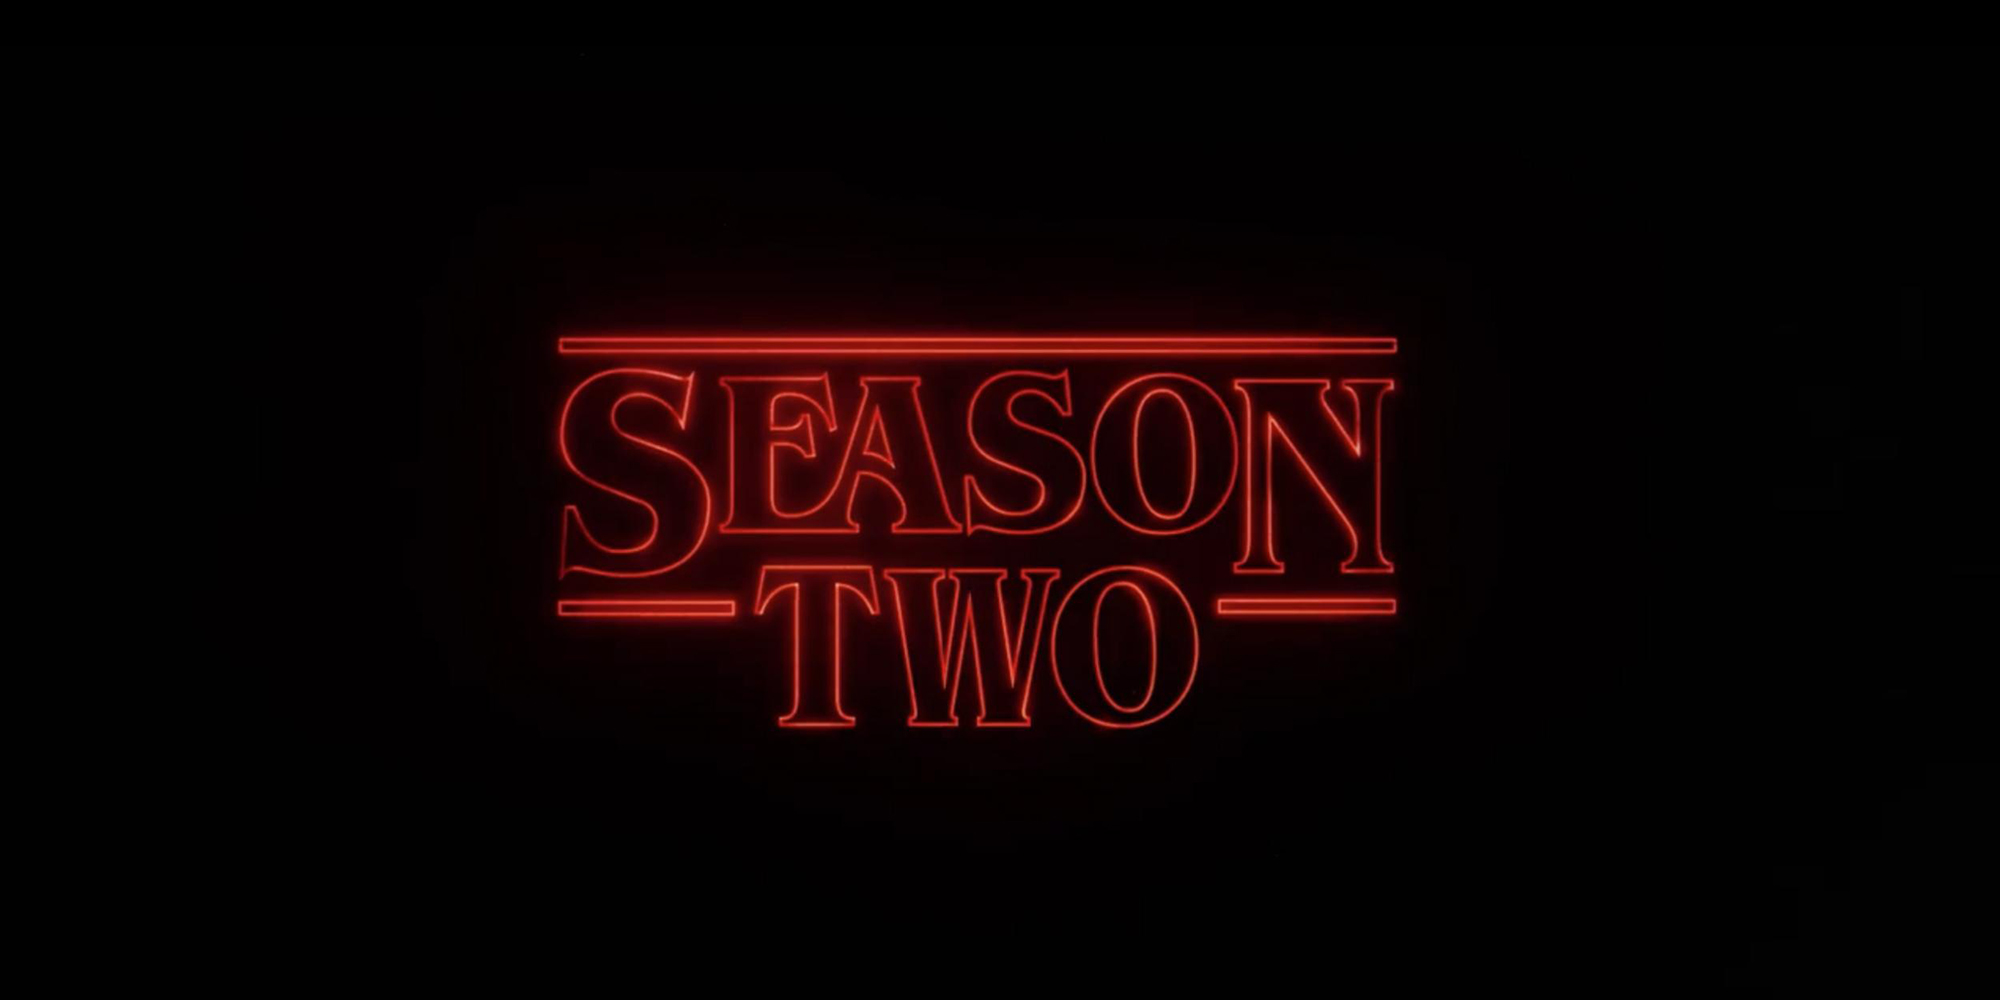  Un teaser pour la saison 2 de Stranger Things